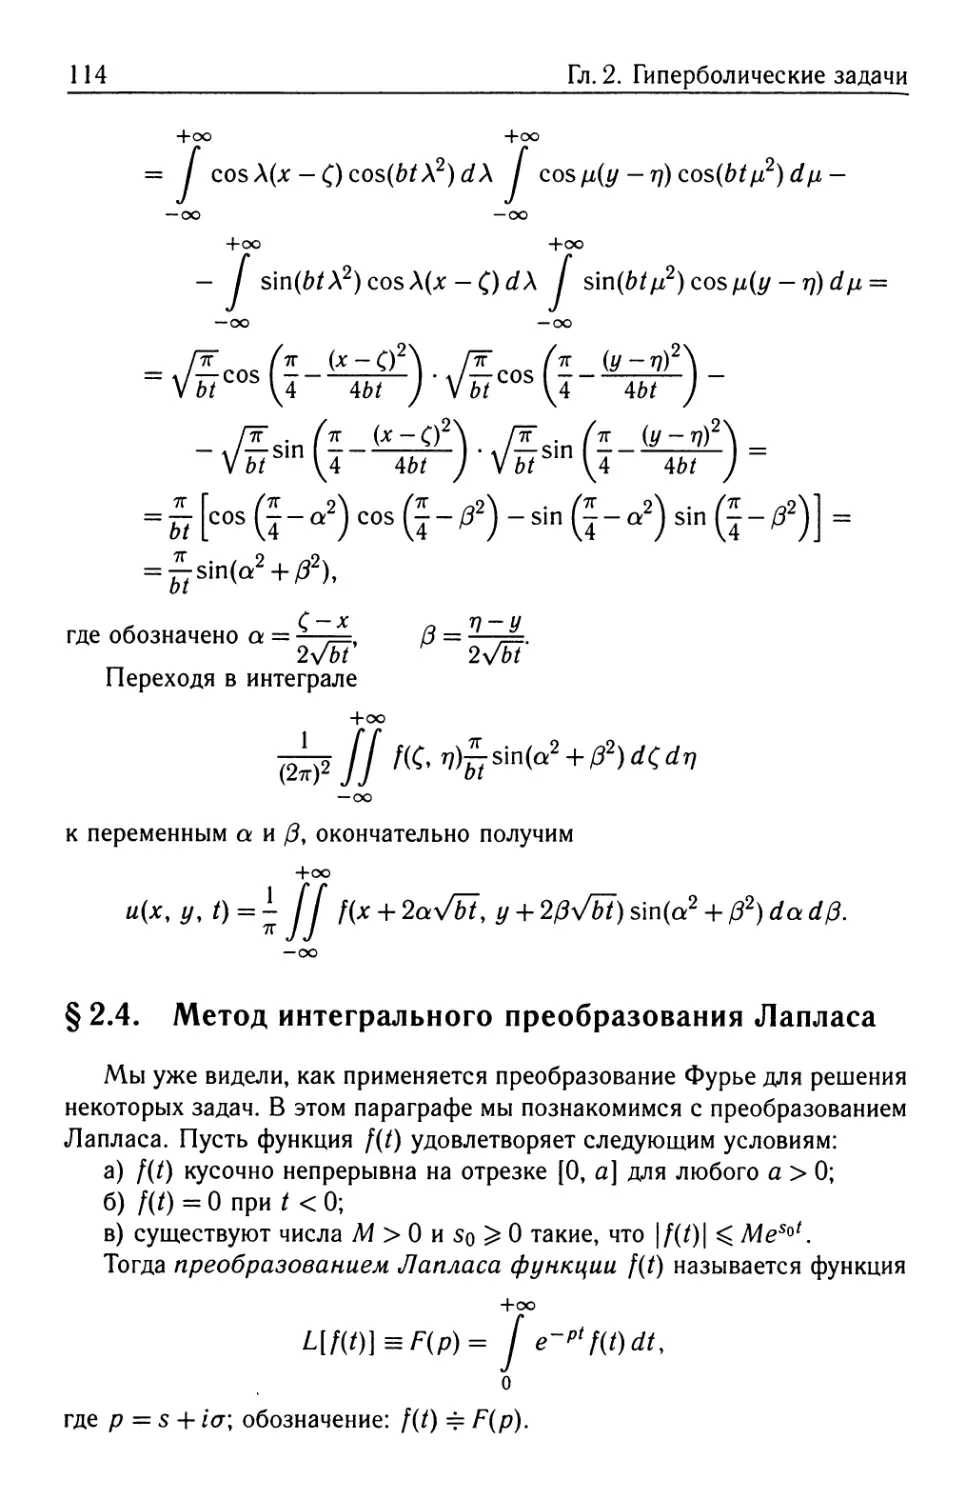 § 2.4. Метод интегрального преобразования Лапласа